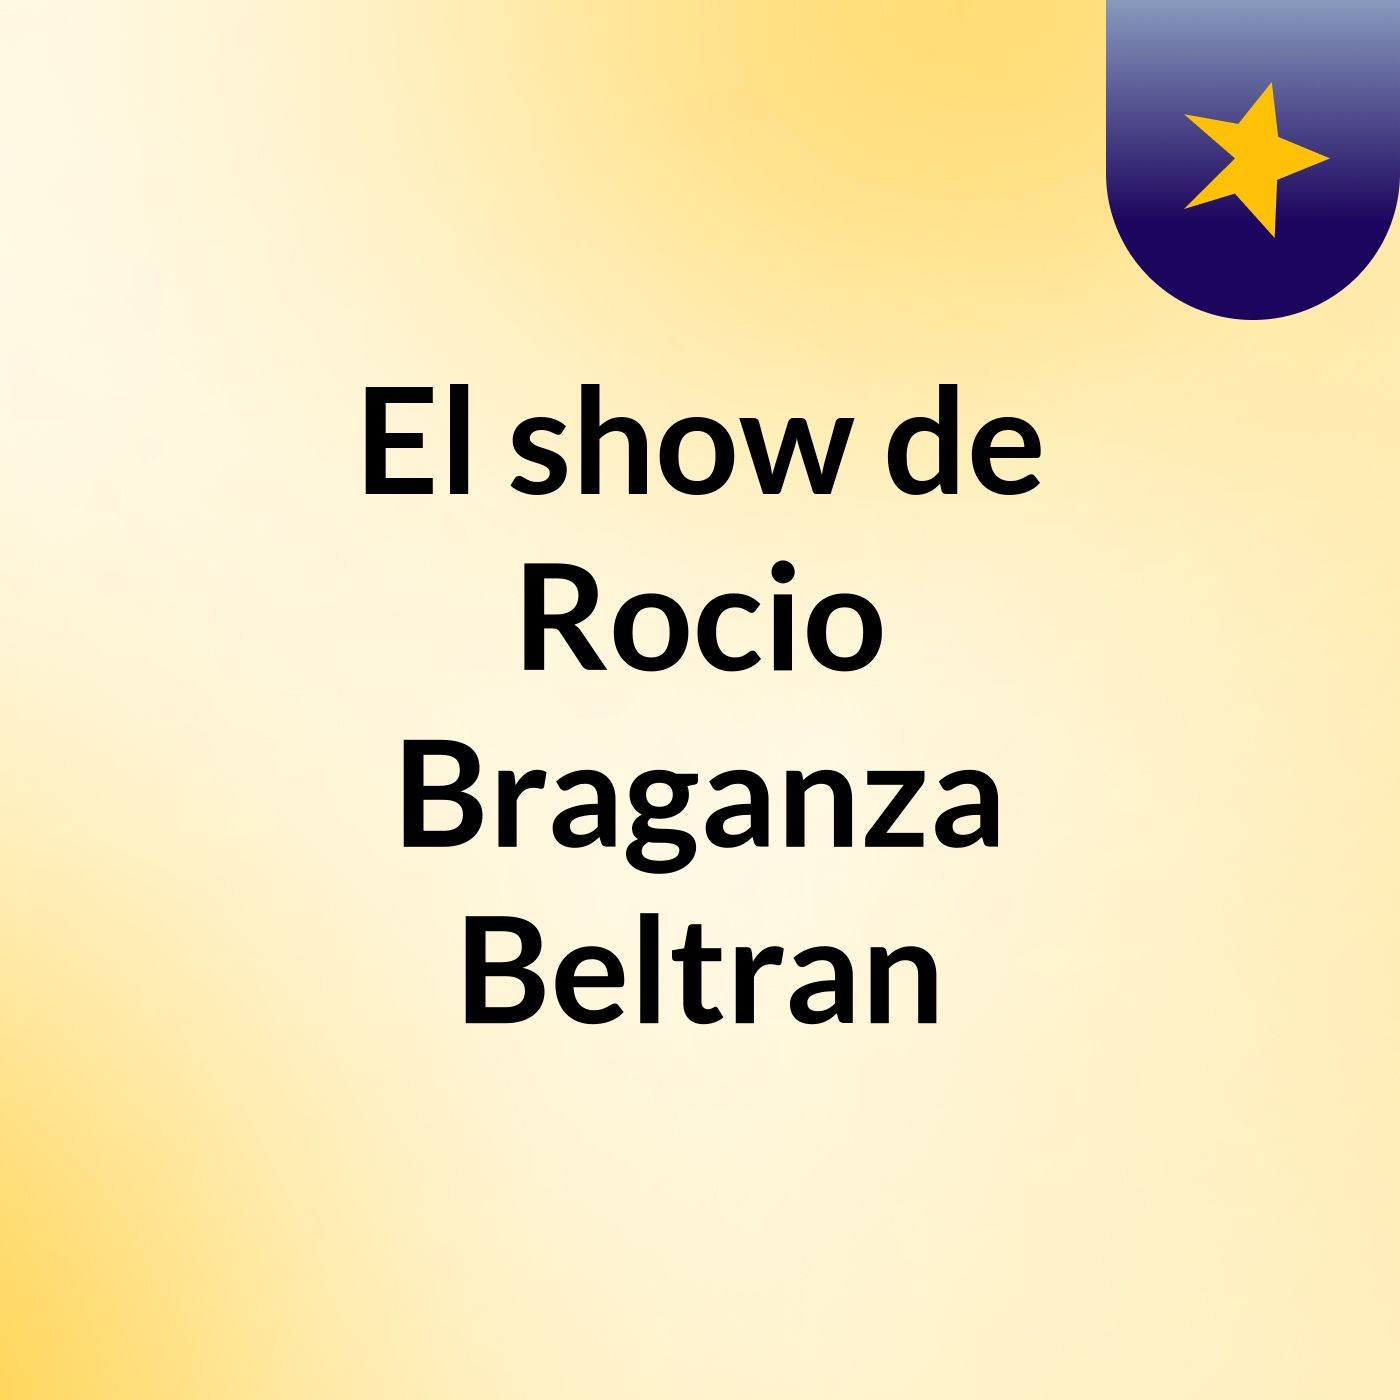 El show de Rocio Braganza Beltran